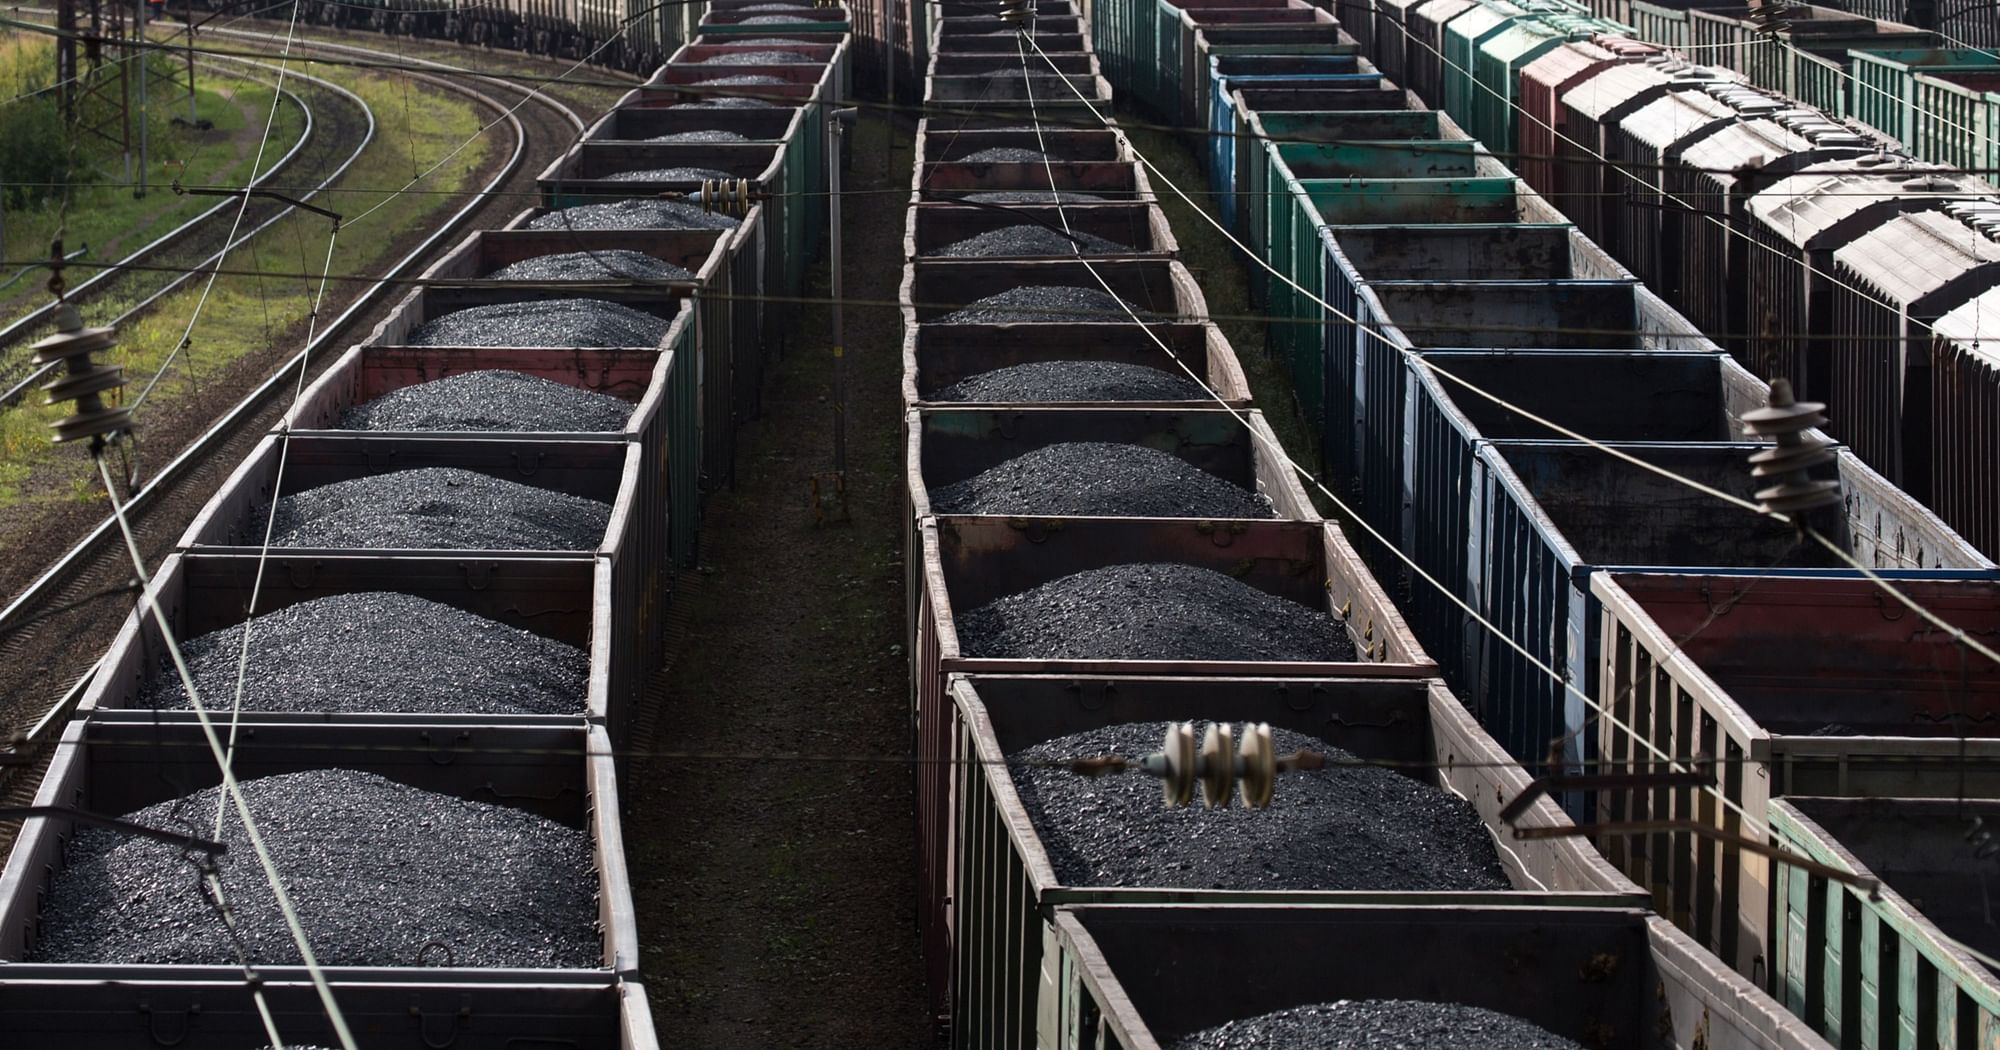 Банк «Открытие»: экспорт угля из Индонезии стимулировал рост его мировых цен